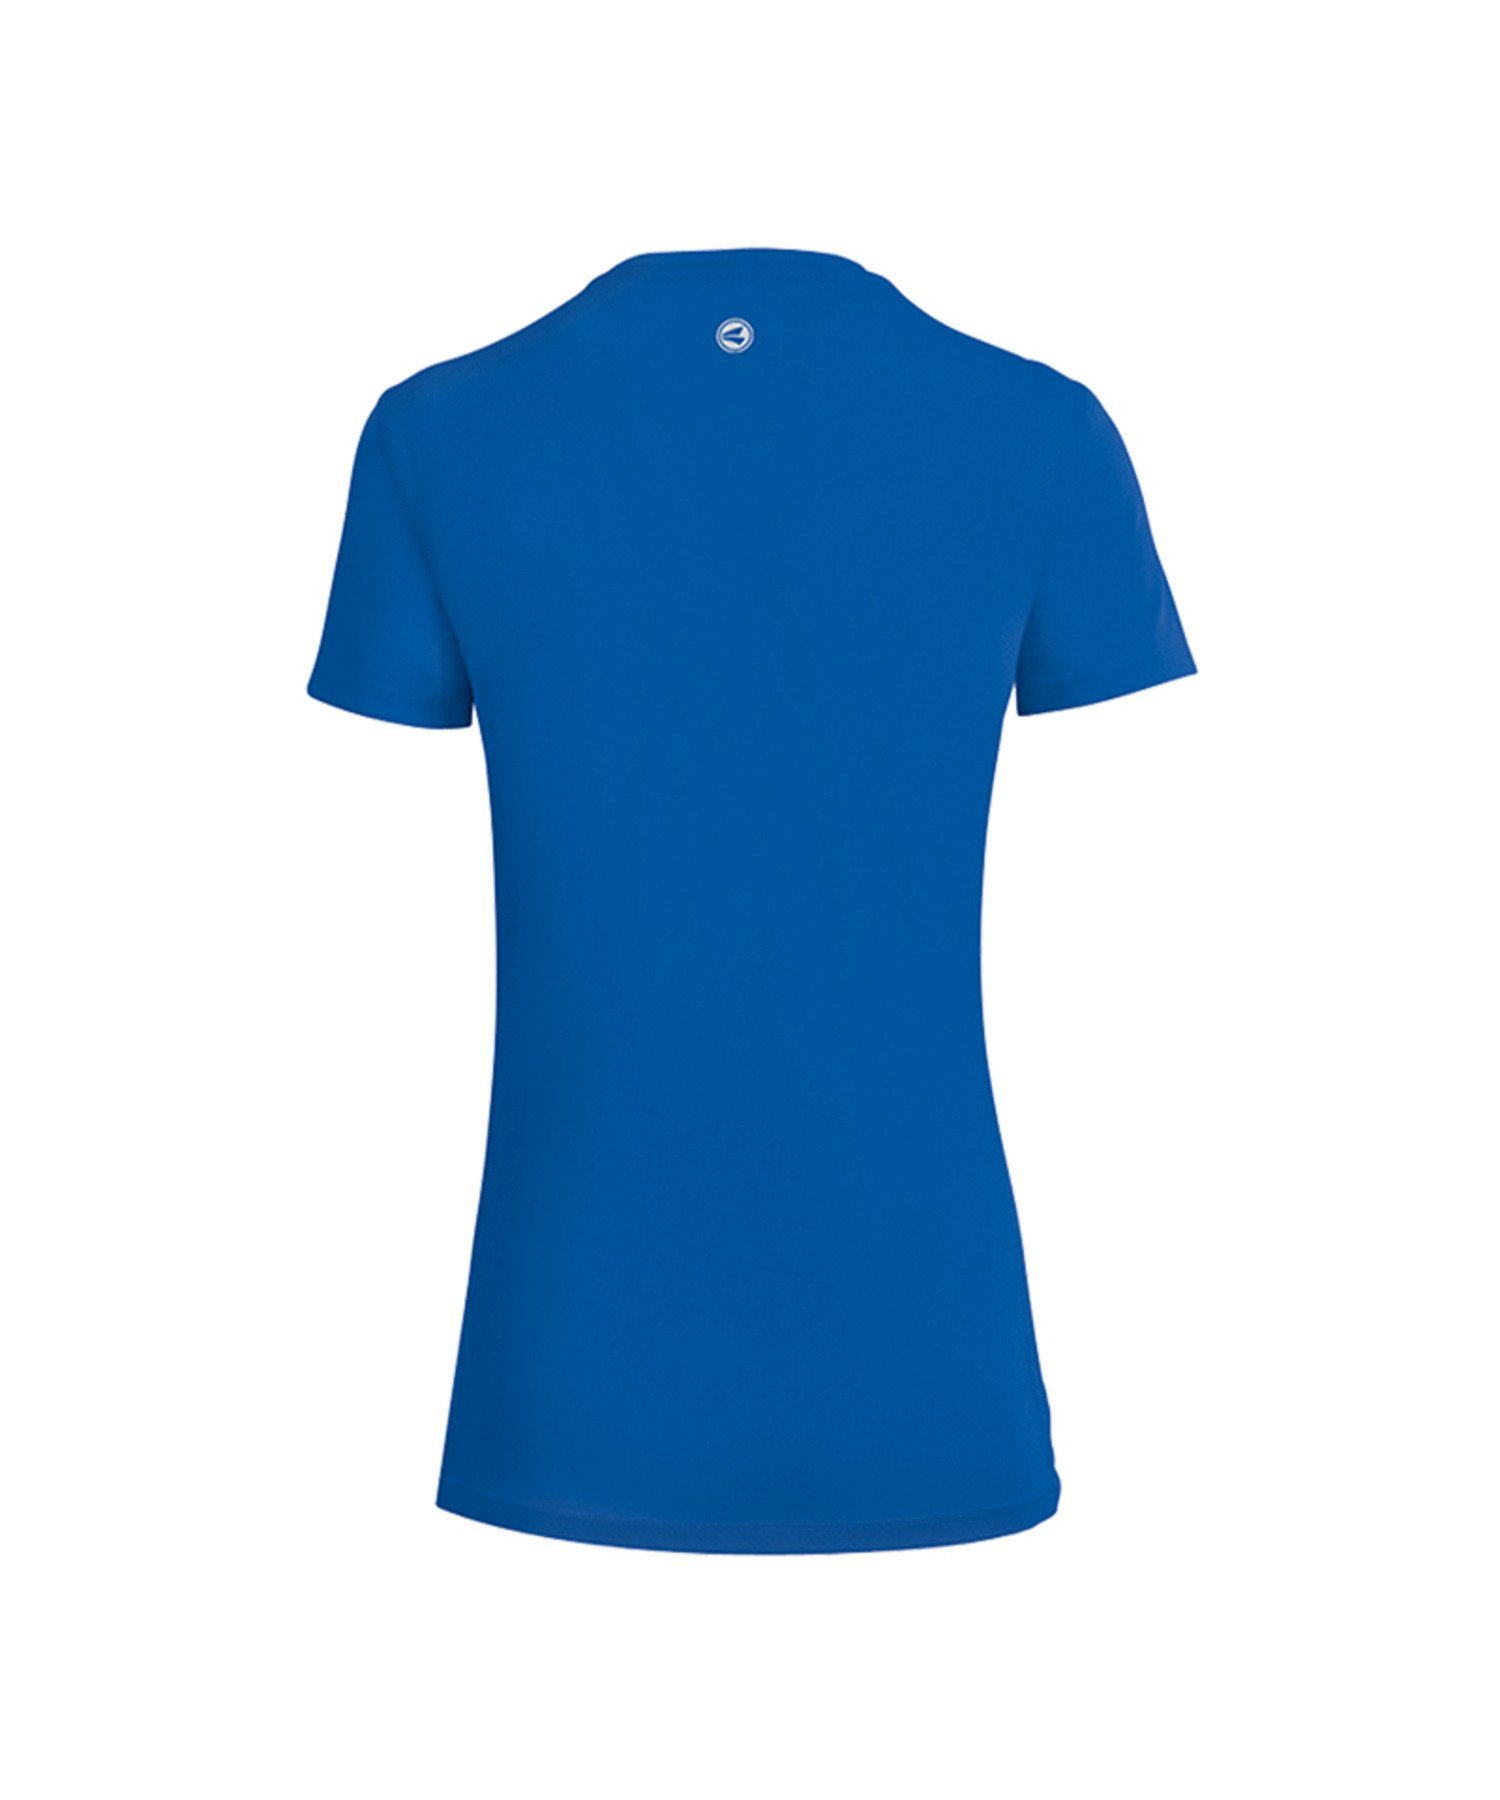 Laufshirt Blau T-Shirt Jako default Running Damen Run 2.0